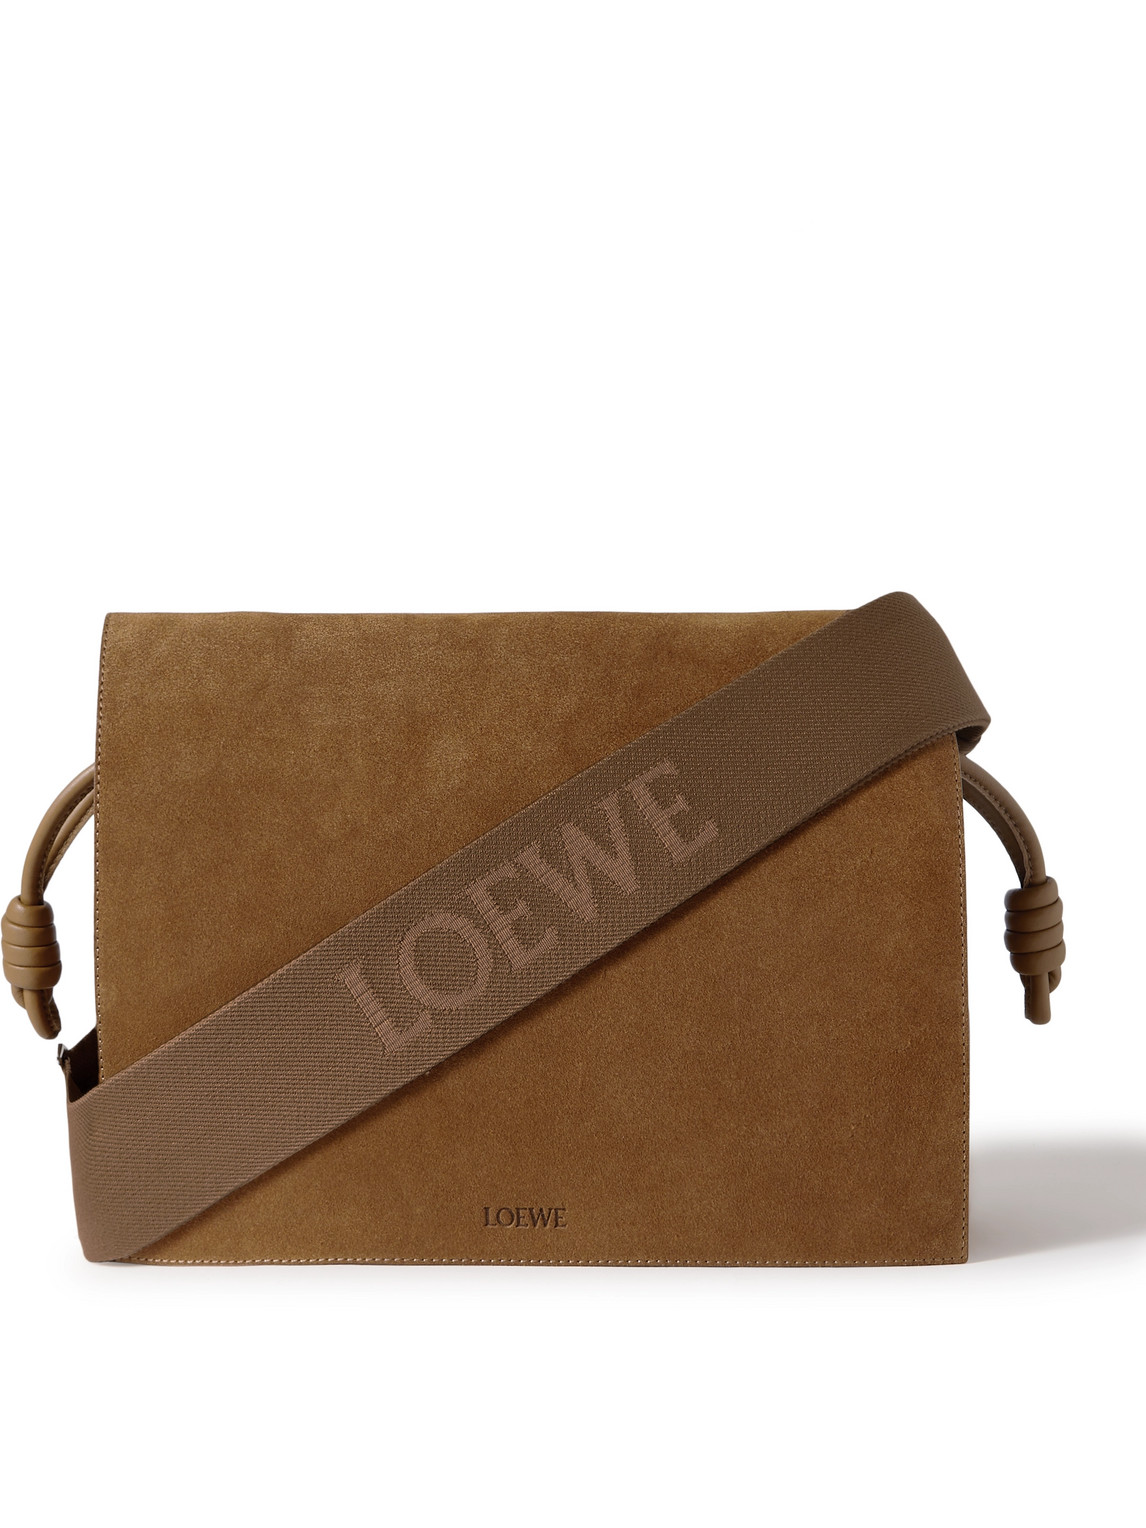 Loewe Flamenco Leather-trimmed Suede Messenger Bag In Brown